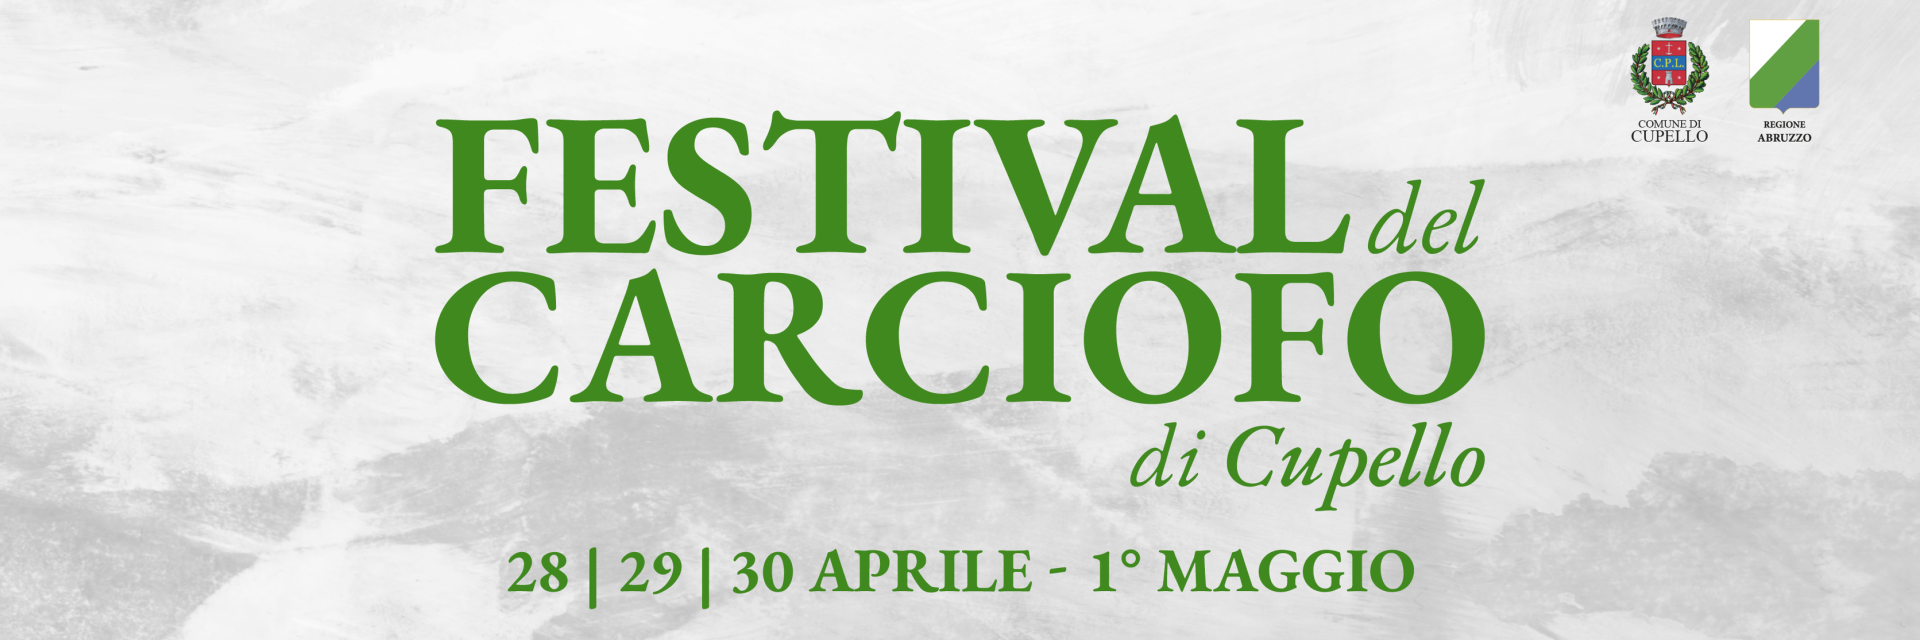 Festival del Carciofo